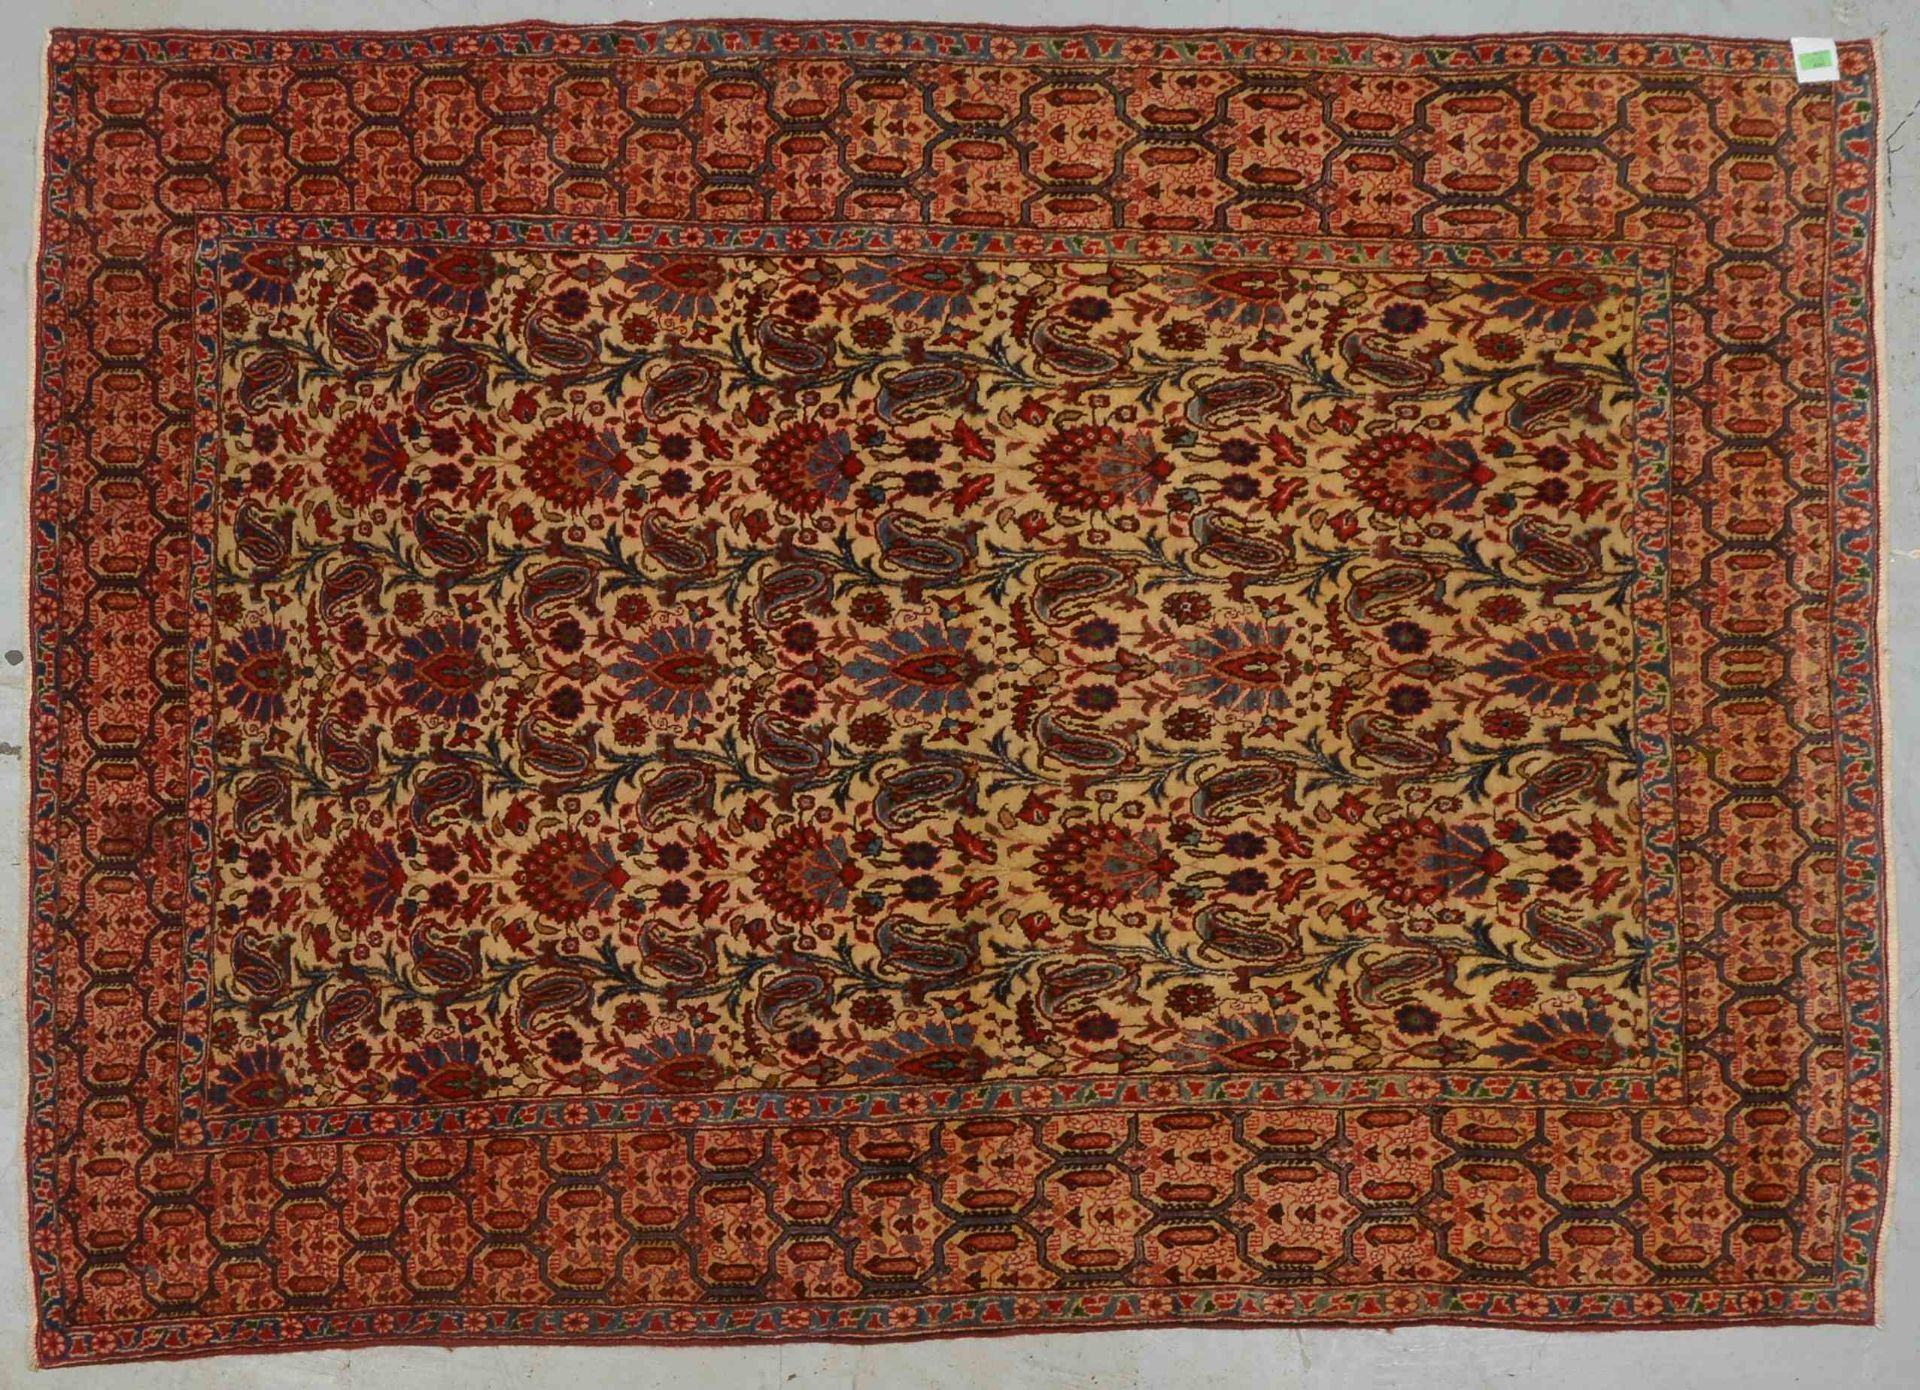 Orientteppich (Isfahan - ?), sehr feine Knüpfung, Pflanzenfarben, hellgrundig, mit Botehs und Blüten